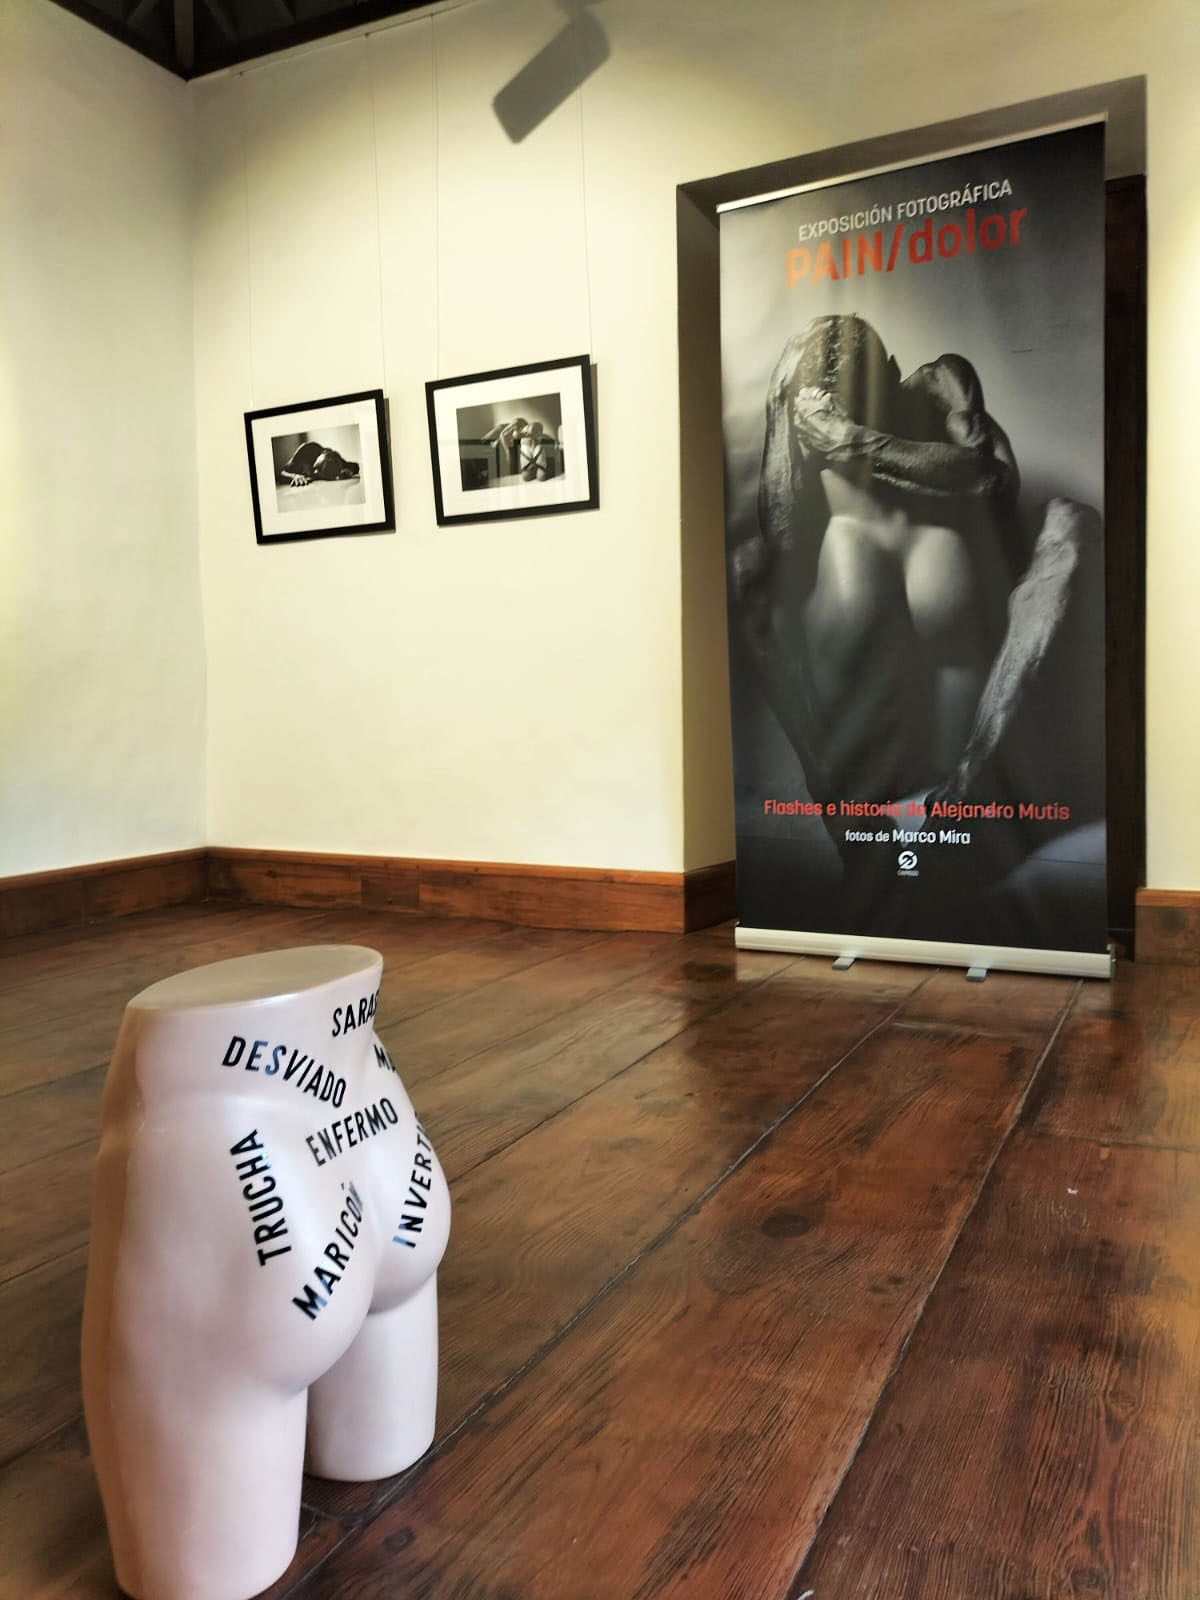 Exposición fotográfica "Pain/Dolor", de Marco Mira, en la Casa del Conde de Argual